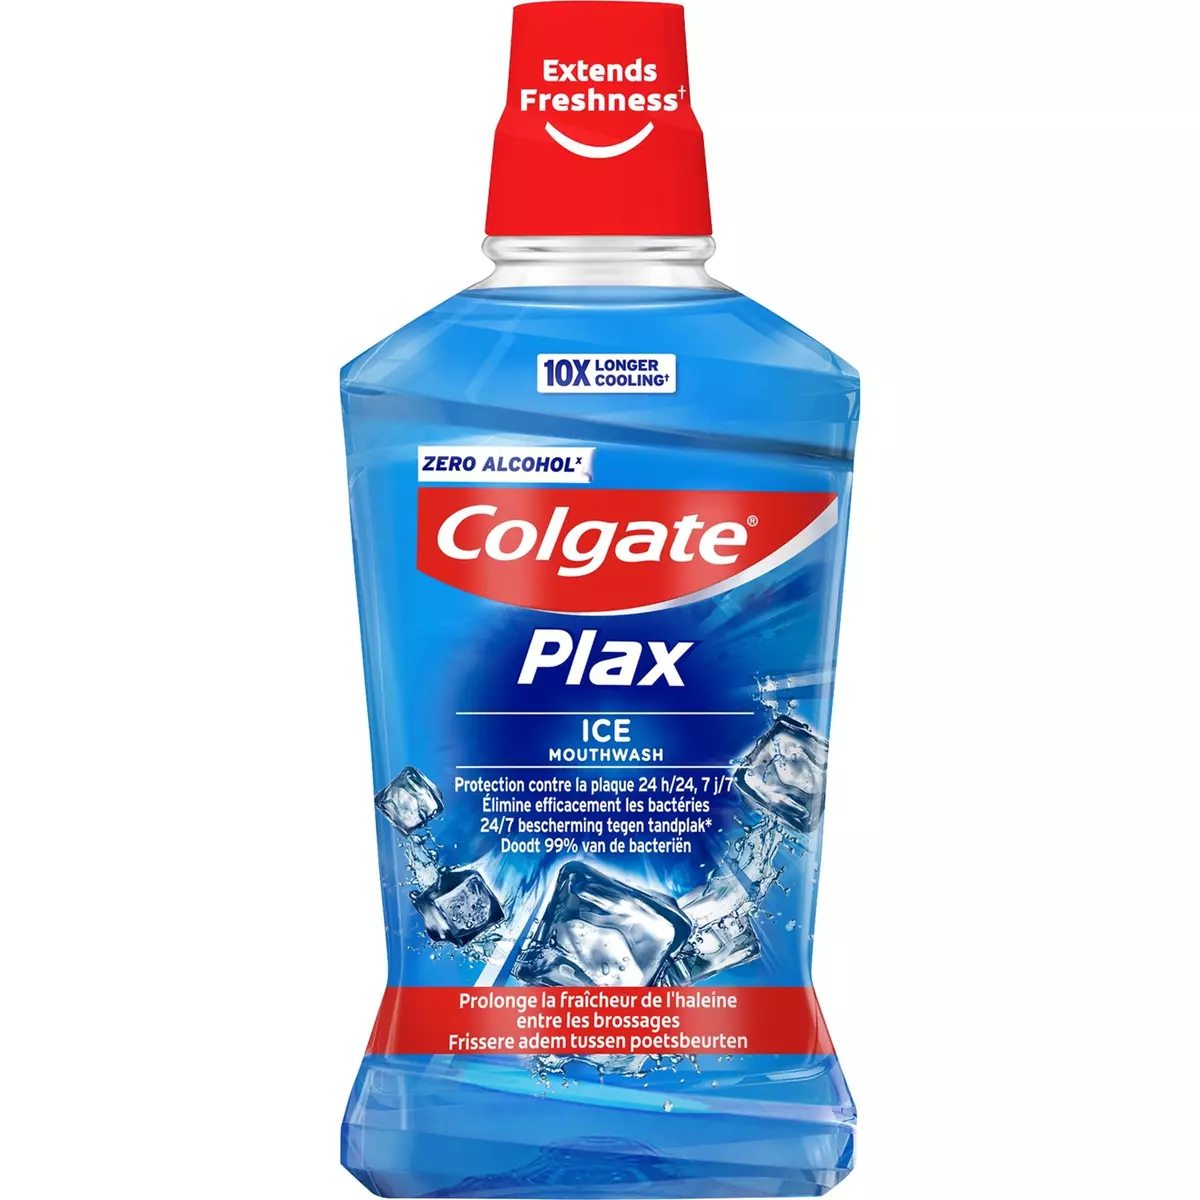 COLGATE Plax bain de bouche ice mouthwash 24h 500ml